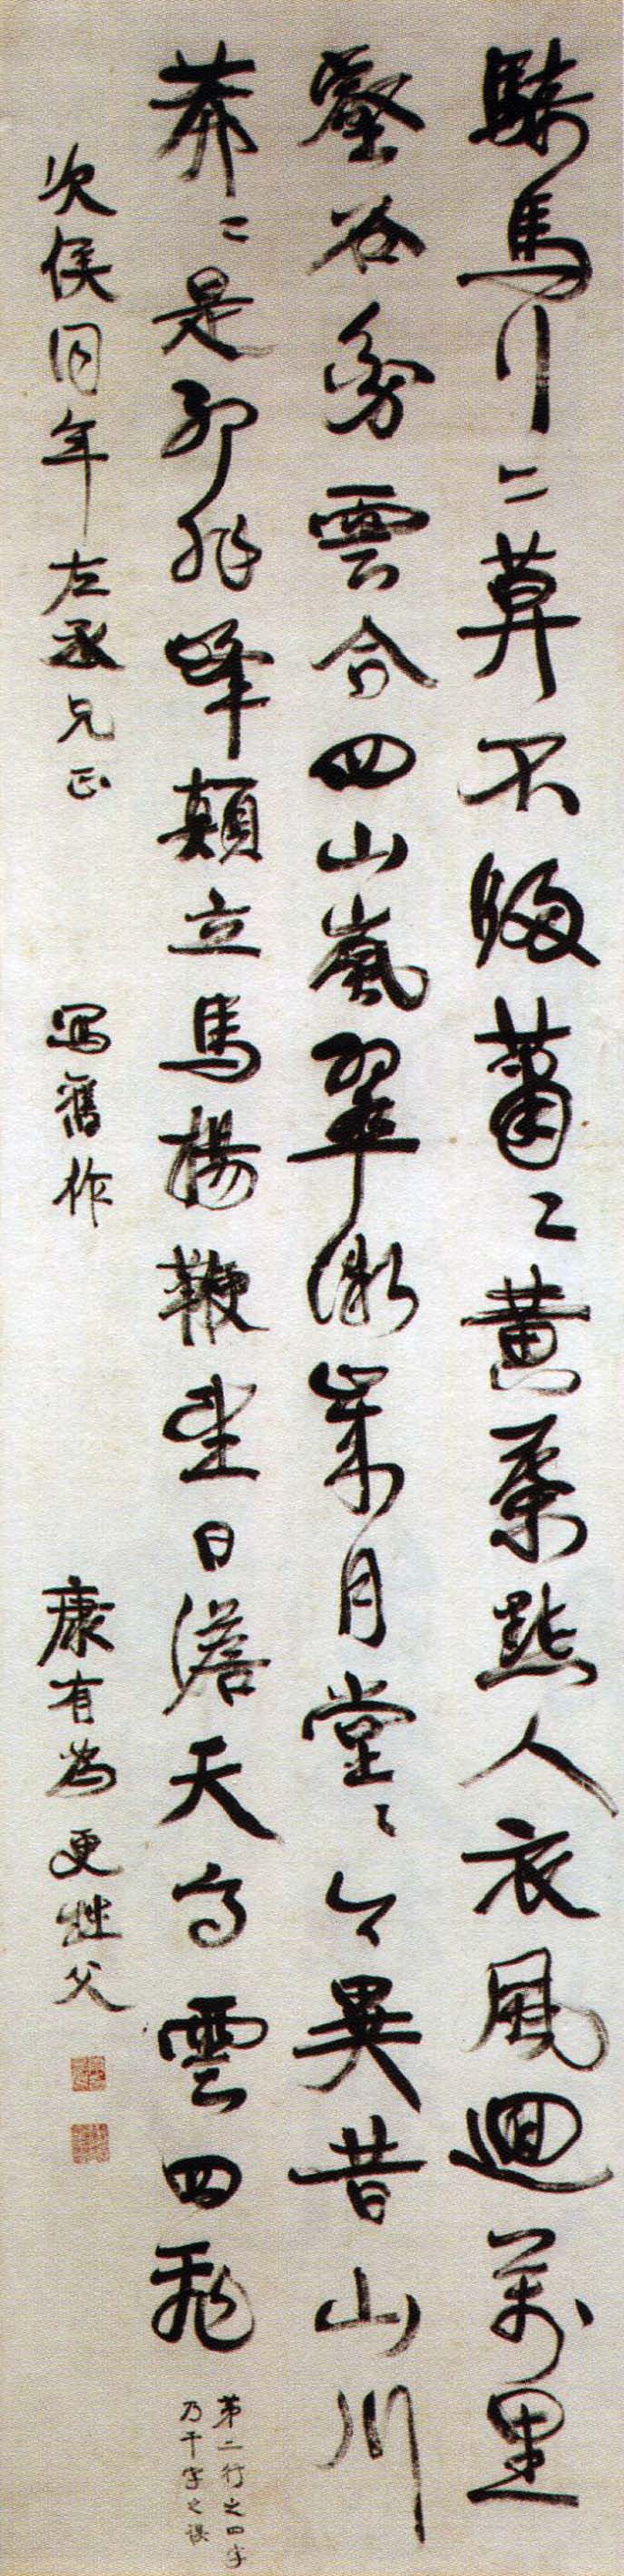 康有为《行书录旧作诗轴》-广东省博物馆藏(图1)